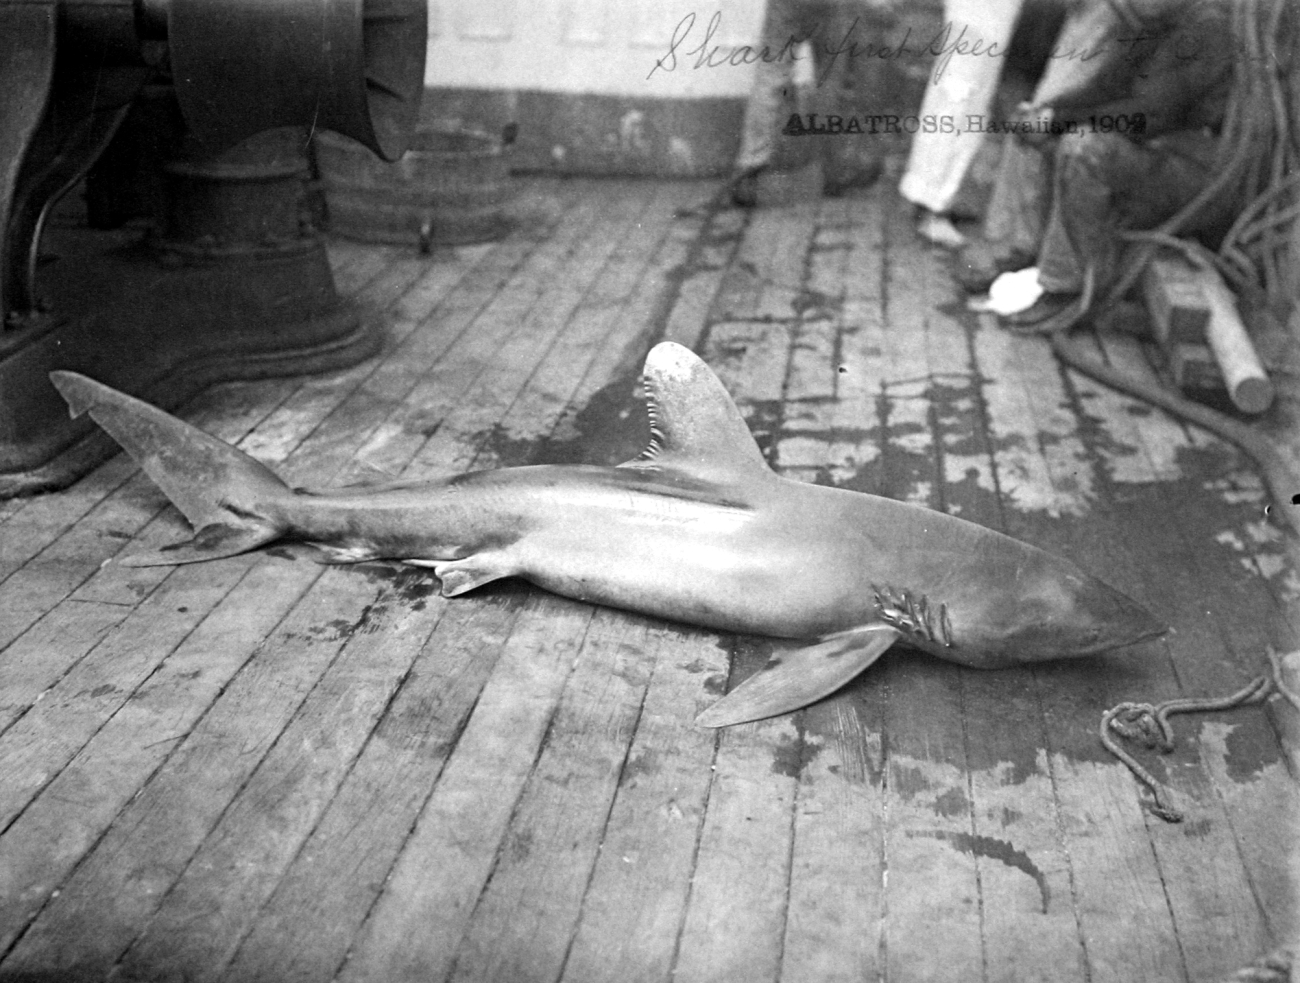 Albatross, HI, 1902, shark, first specimen taken